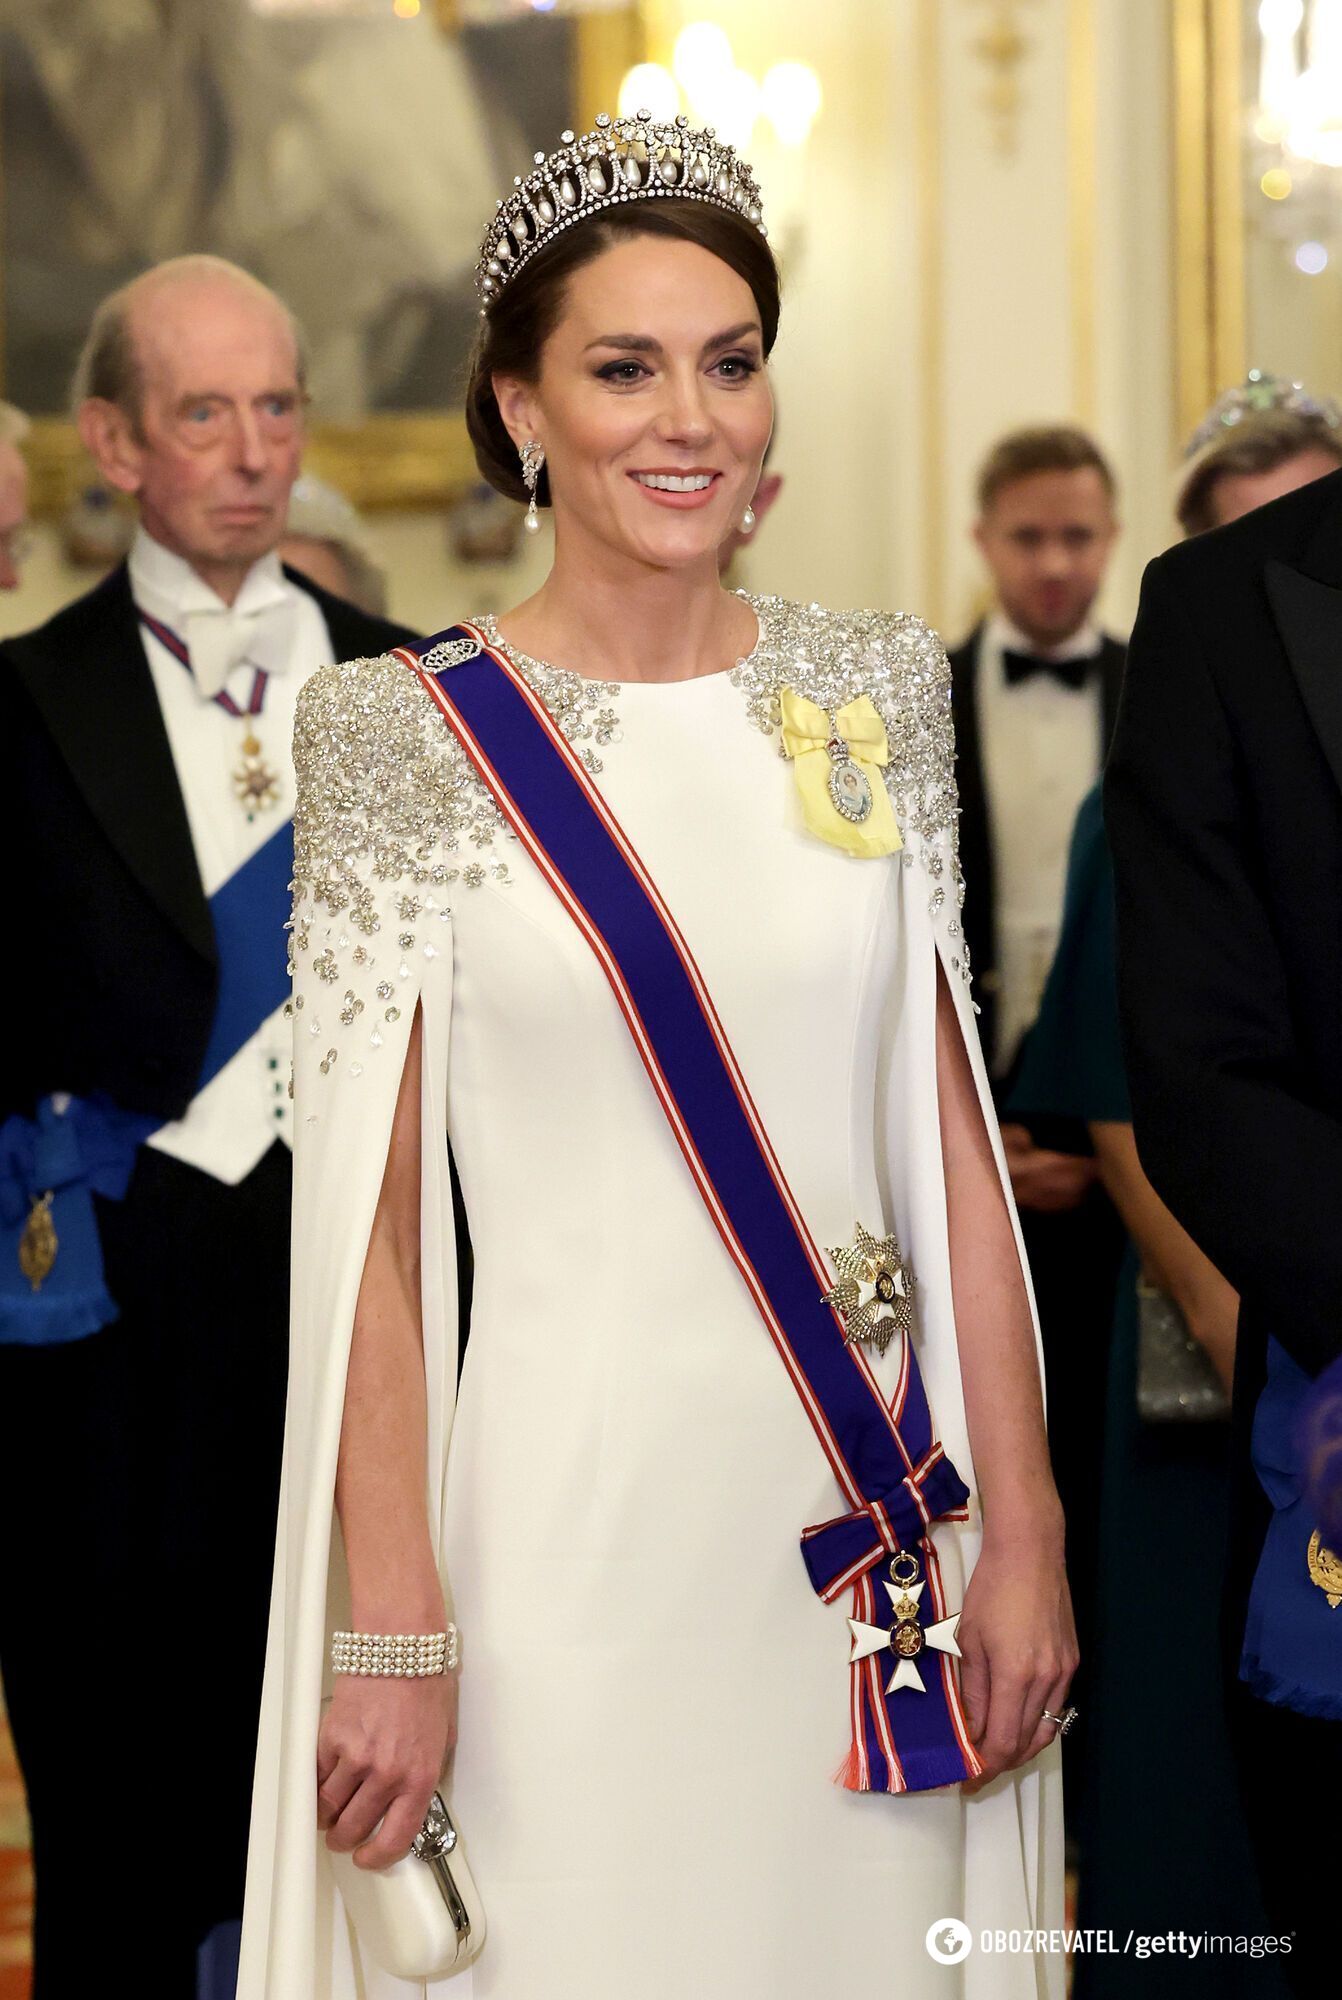 Nowy portret Kate Middleton na okładce magazynu zdezorientował fanów rodziny królewskiej. fot.